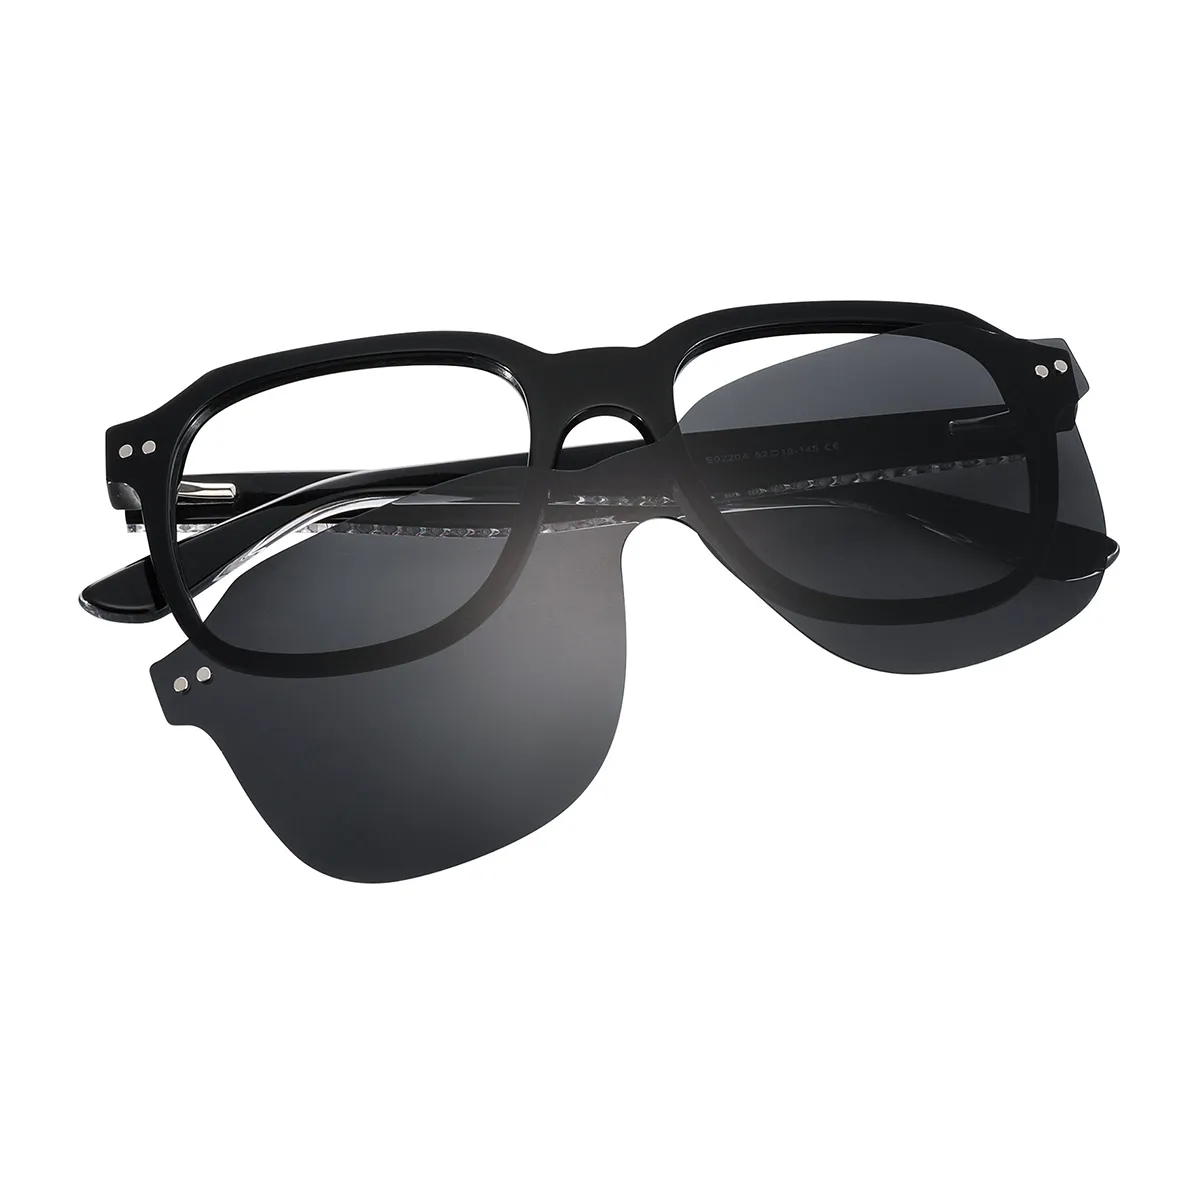 Irwin - Square Black Clip On Sunglasses for Men & Women